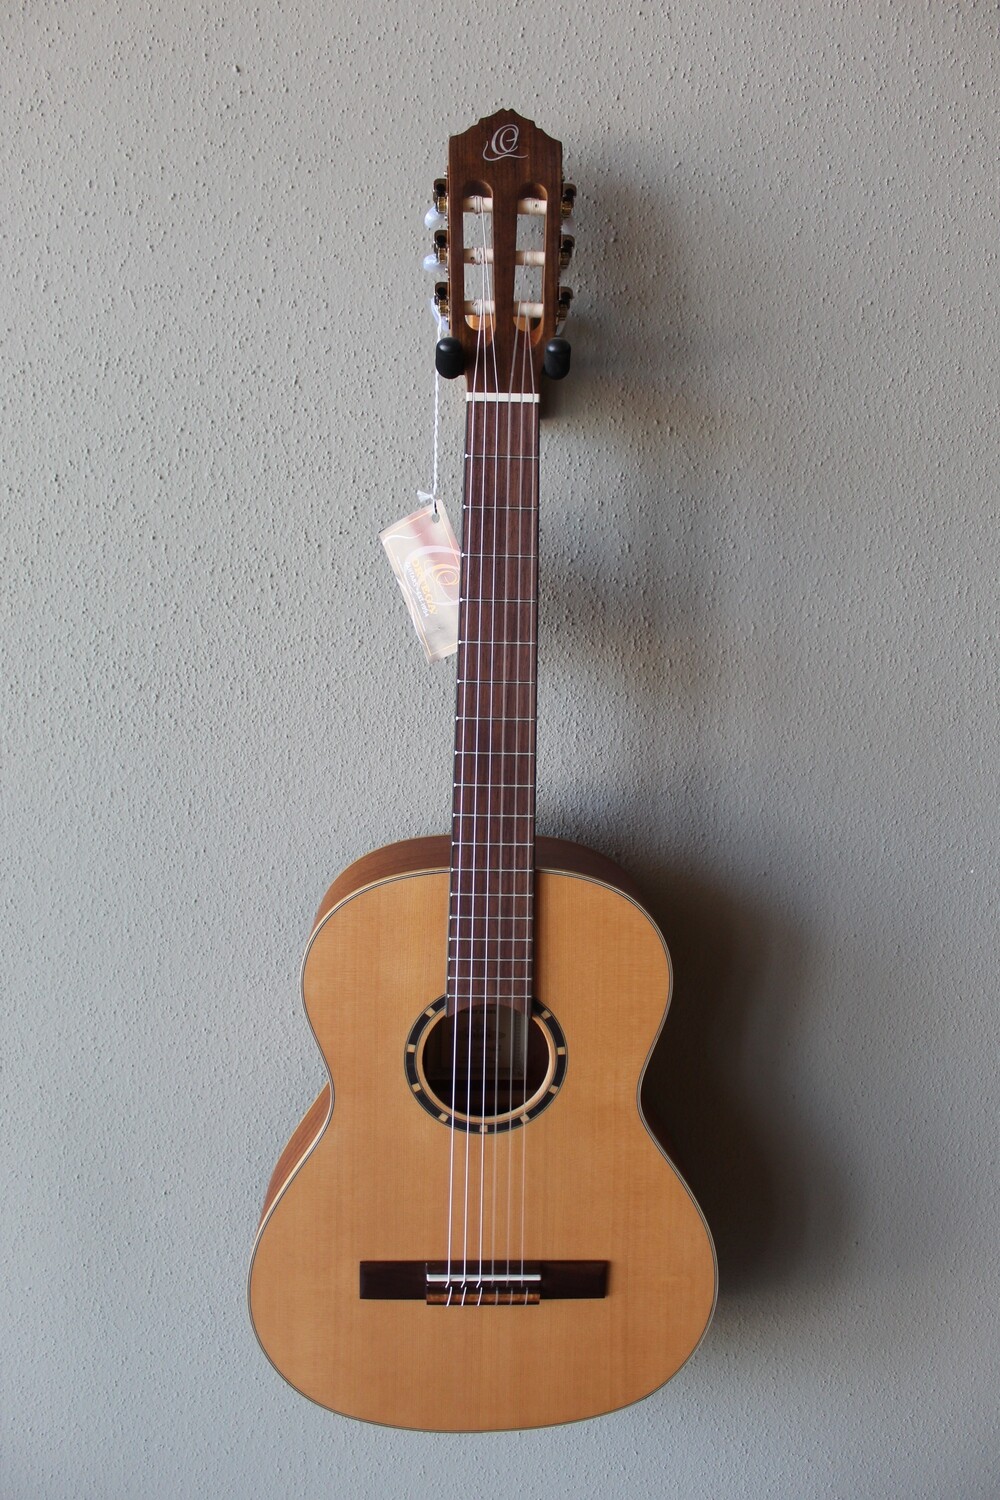 Ortega R122-3/4 Three Quarter Size Nylon String Classical Guitar with Gig Bag